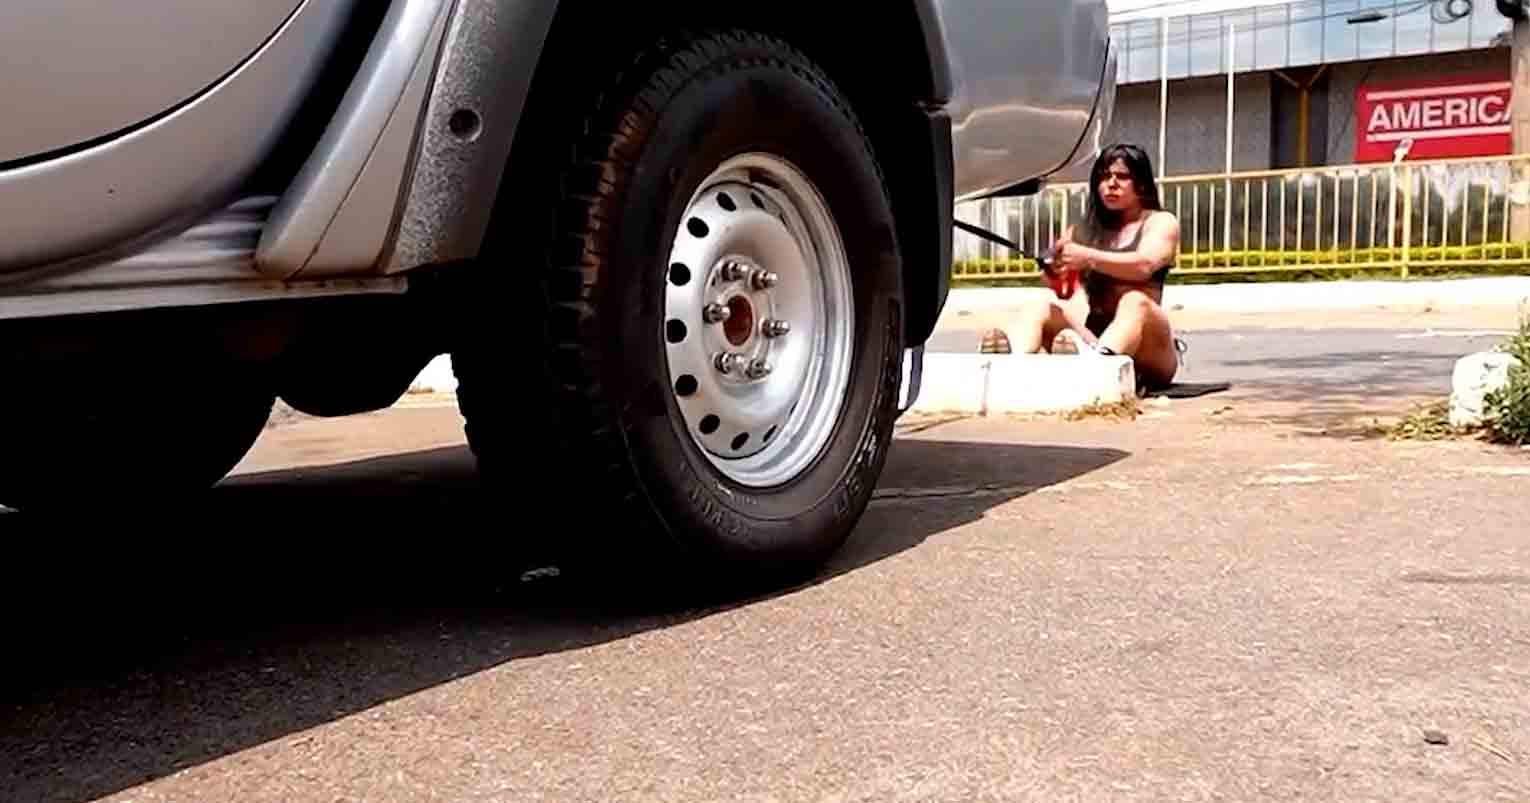 Video: Influencerka Suzy Cortez děsí své sledující tahem náklaďáku. Foto a video: Reprodukce Instagram @suzyacortez